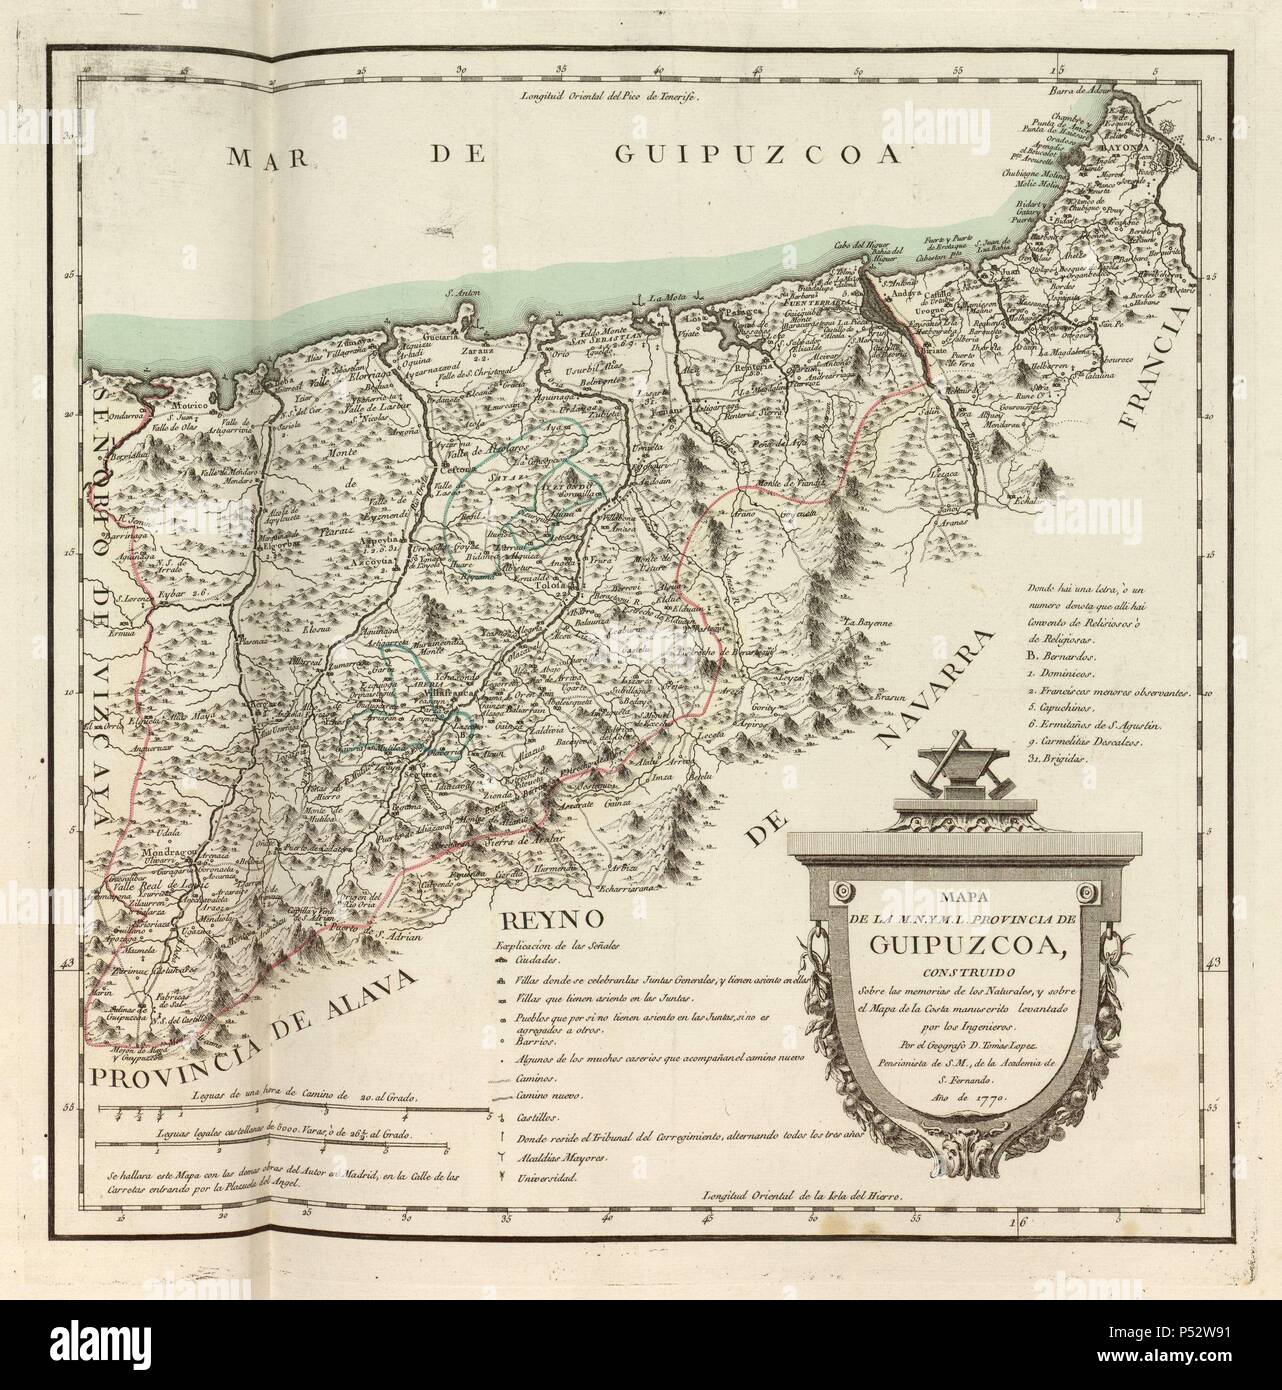 MAPA DE LA M.N. Y M.L. PROVINCIA DE GUIPUZCOA, 1770, GRABADO COLOREADO 40x40. Author: Tomás López (1730-1802). Location: ACADEMIA DE LA HISTORIA-COLECCION, MADRID. Stock Photo